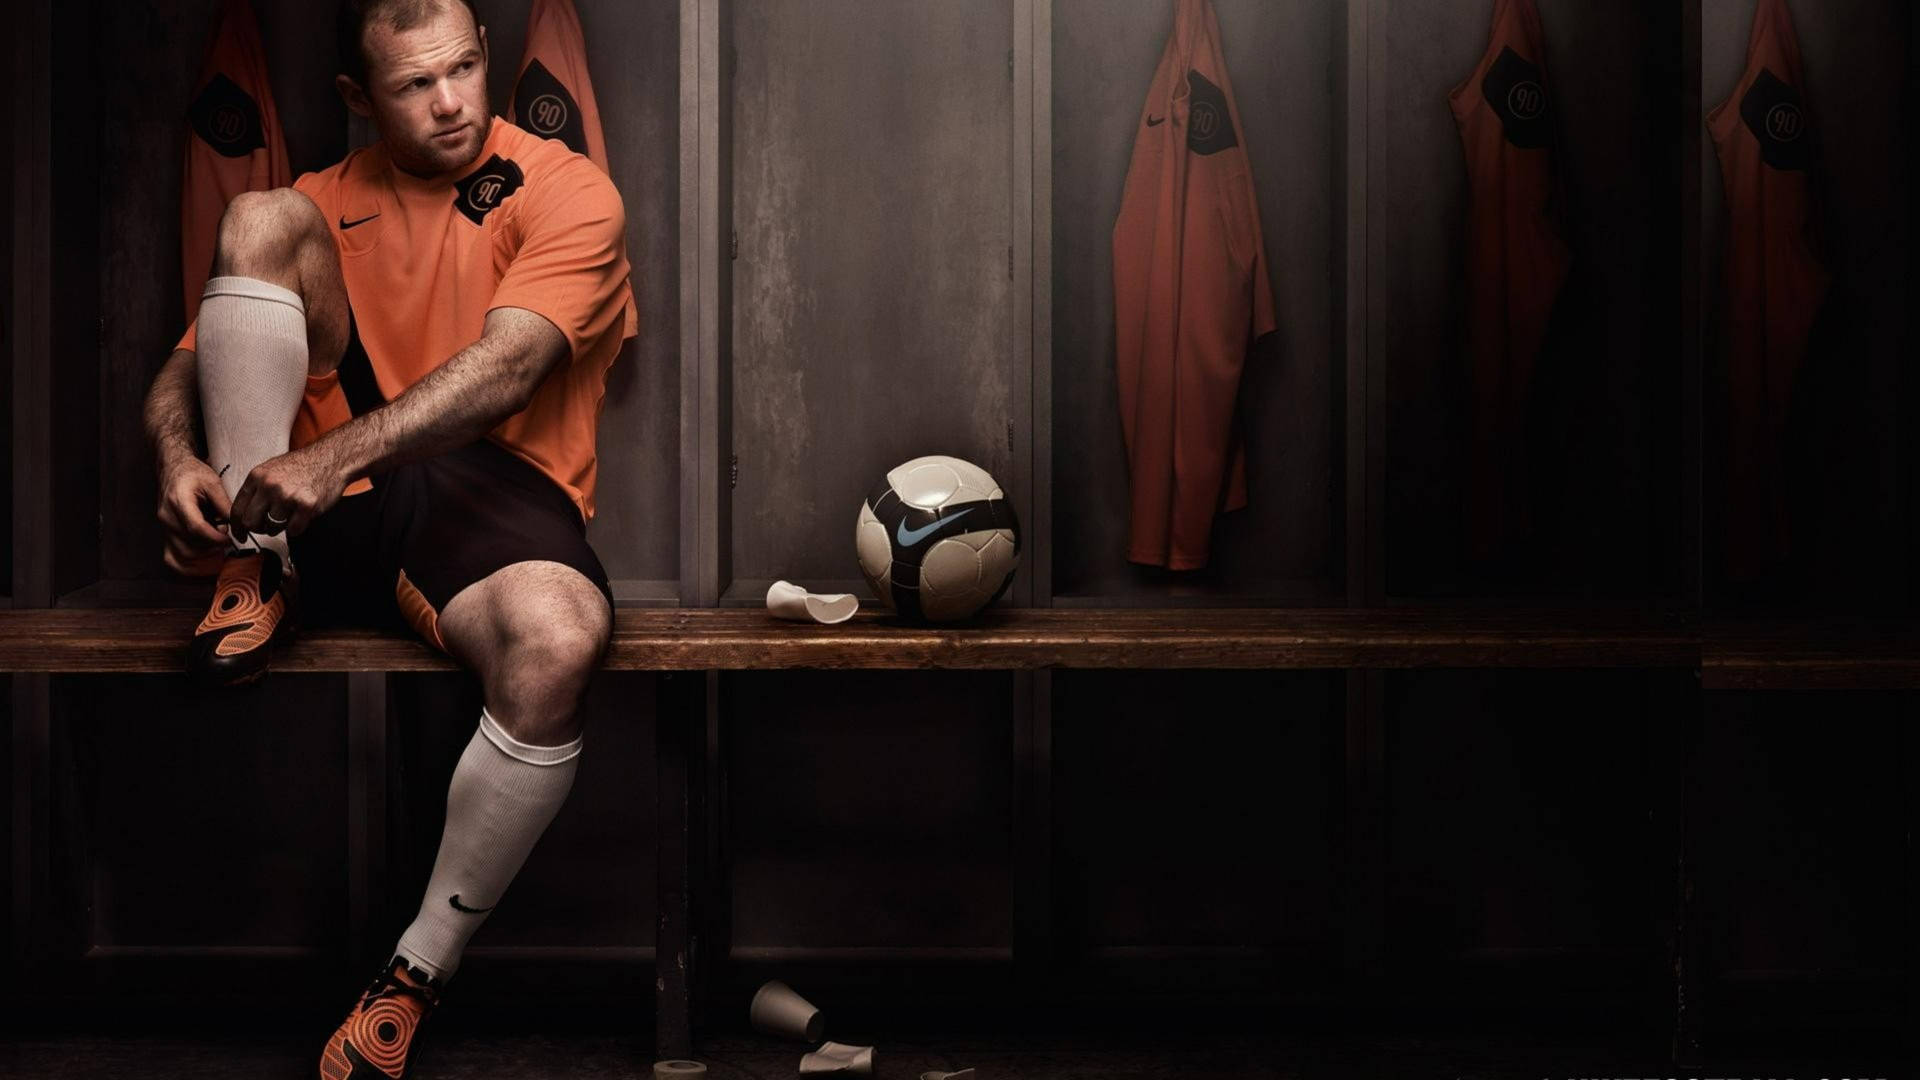 Wayne Rooney Nike Locker Room Picture